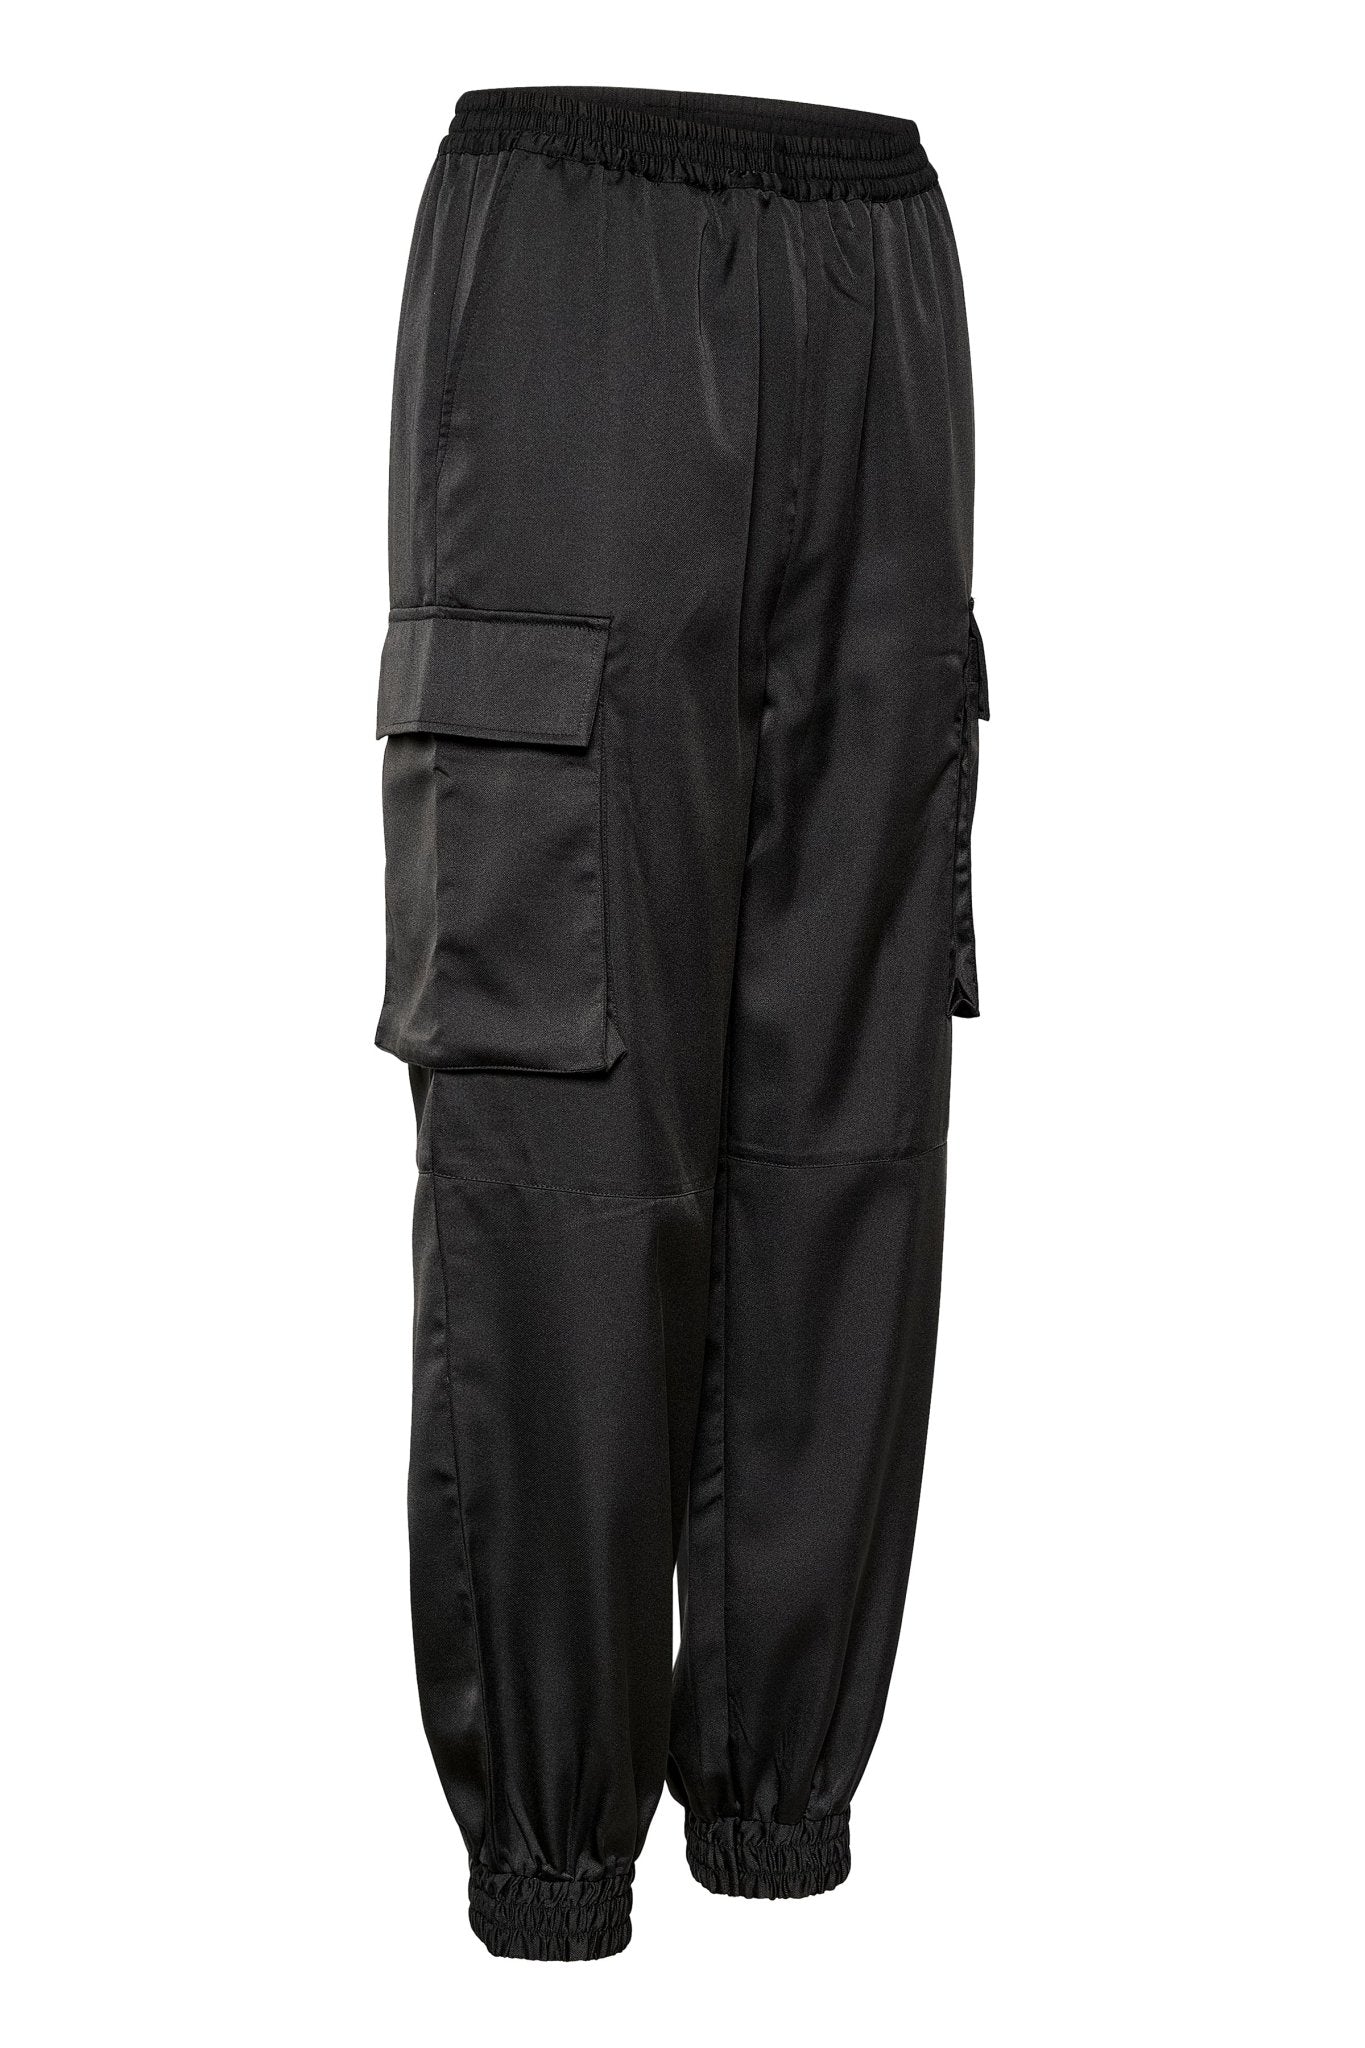 Bianca Cargo Trousers by Saint Tropez - Black - Blue Sky Fashions & Lingerie